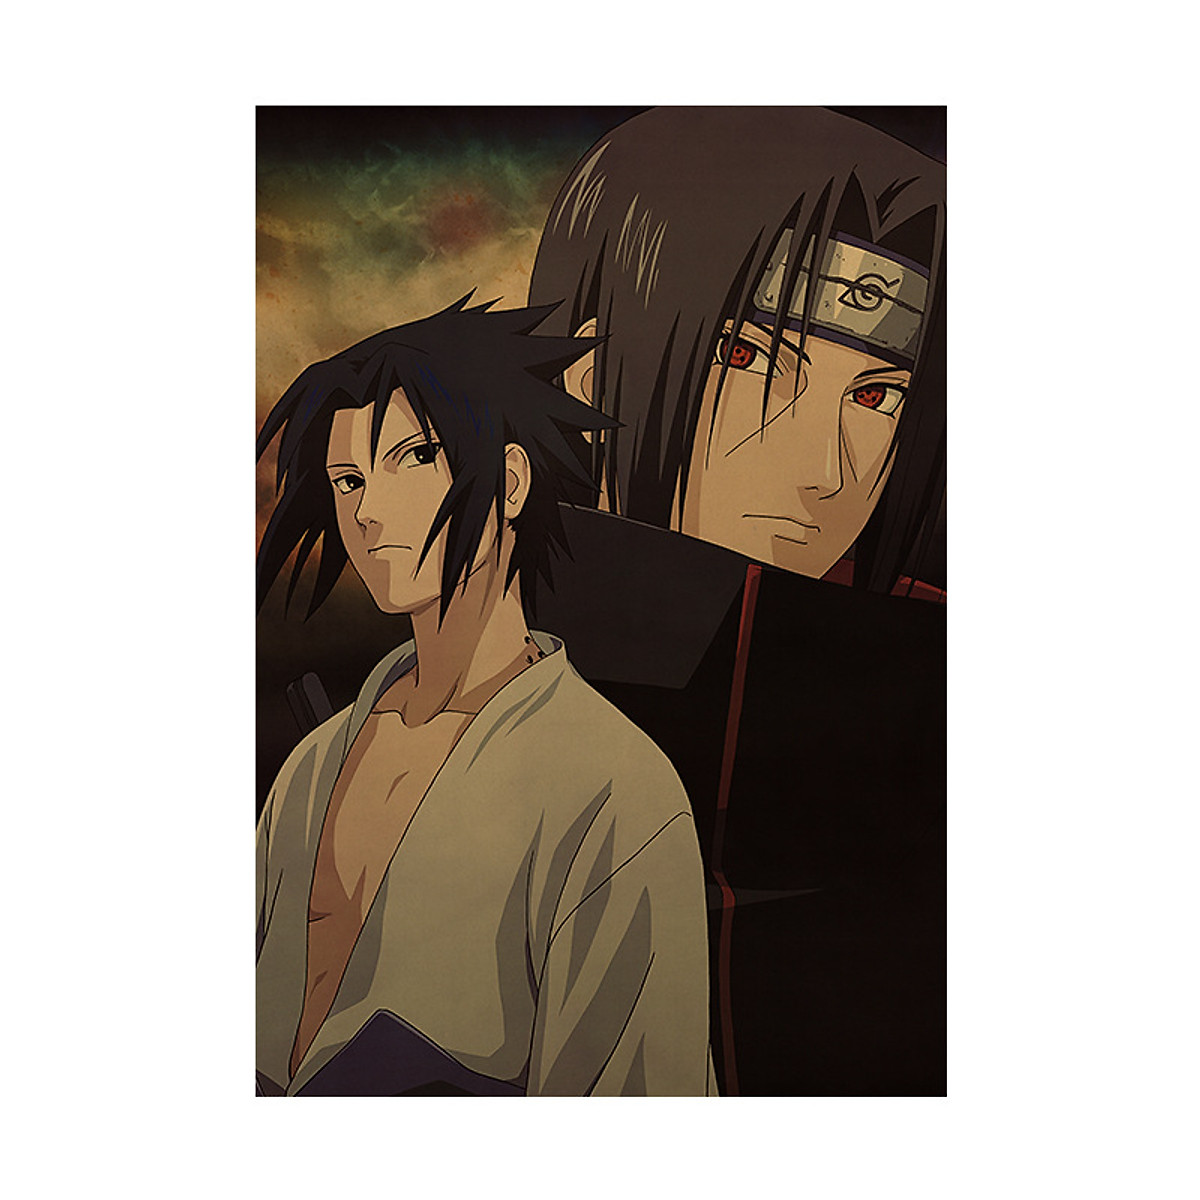 Tấm áp phích hai anh em Sasuke và Itachi là một tác phẩm nghệ thuật thú vị mang đến cho bạn những hình ảnh đẹp mắt, sắc nét, trong đó hai anh em tạo nên một dấu ấn đặc biệt. Nếu bạn là một fan của Sasuke và Itachi, đây chắc chắn là tấm áp phích bạn không thể bỏ lỡ.